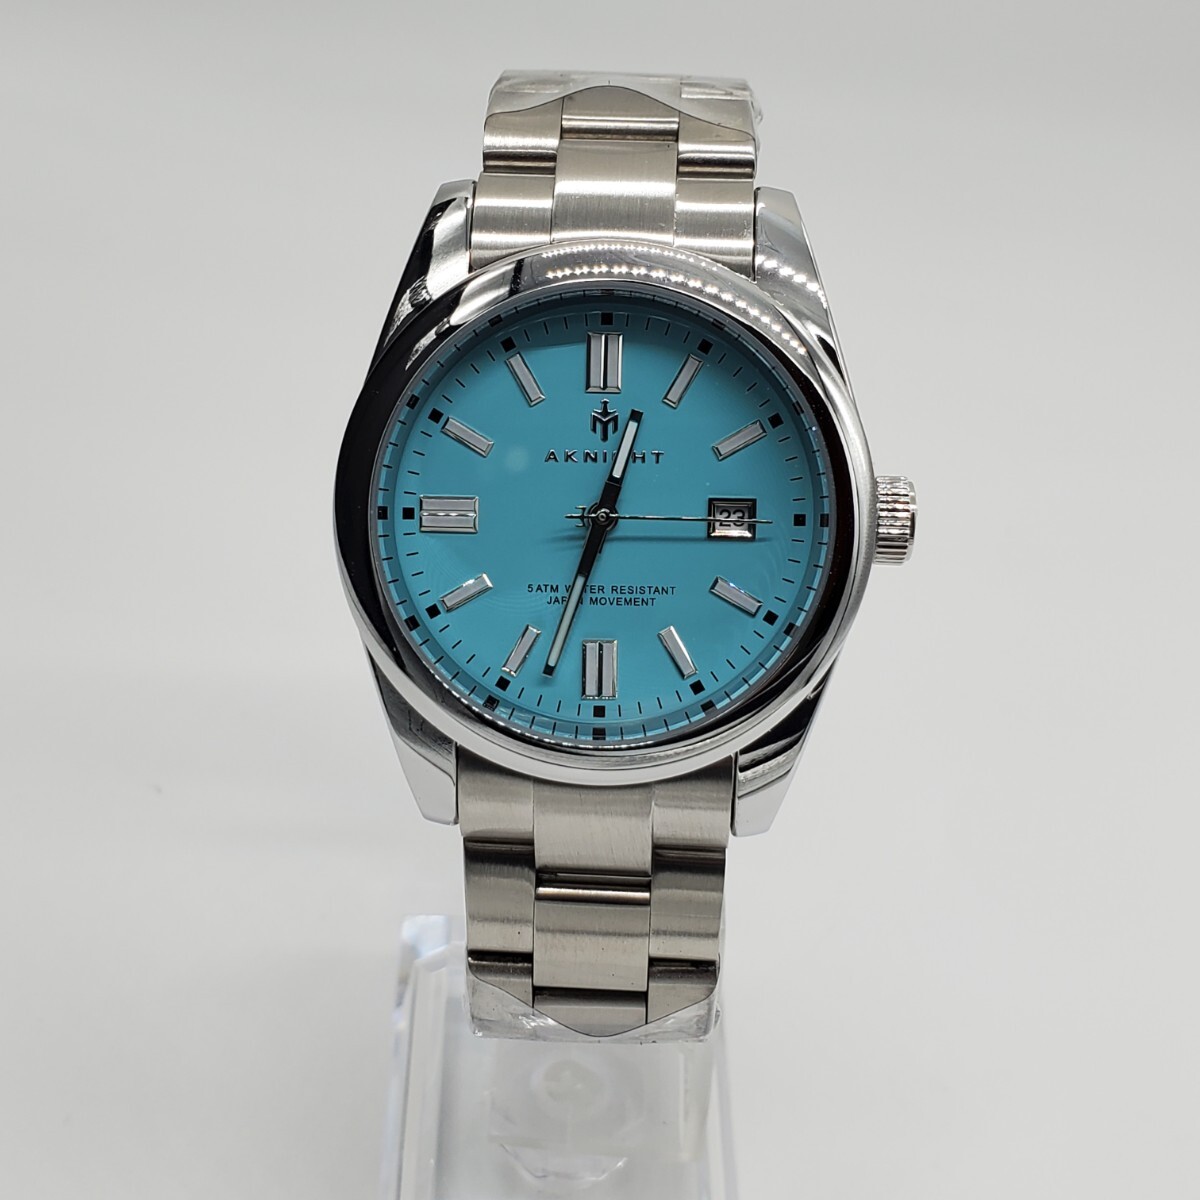 新品 AKNIGHT ターコイズブルー メンズ腕時計 クォーツ式の画像3